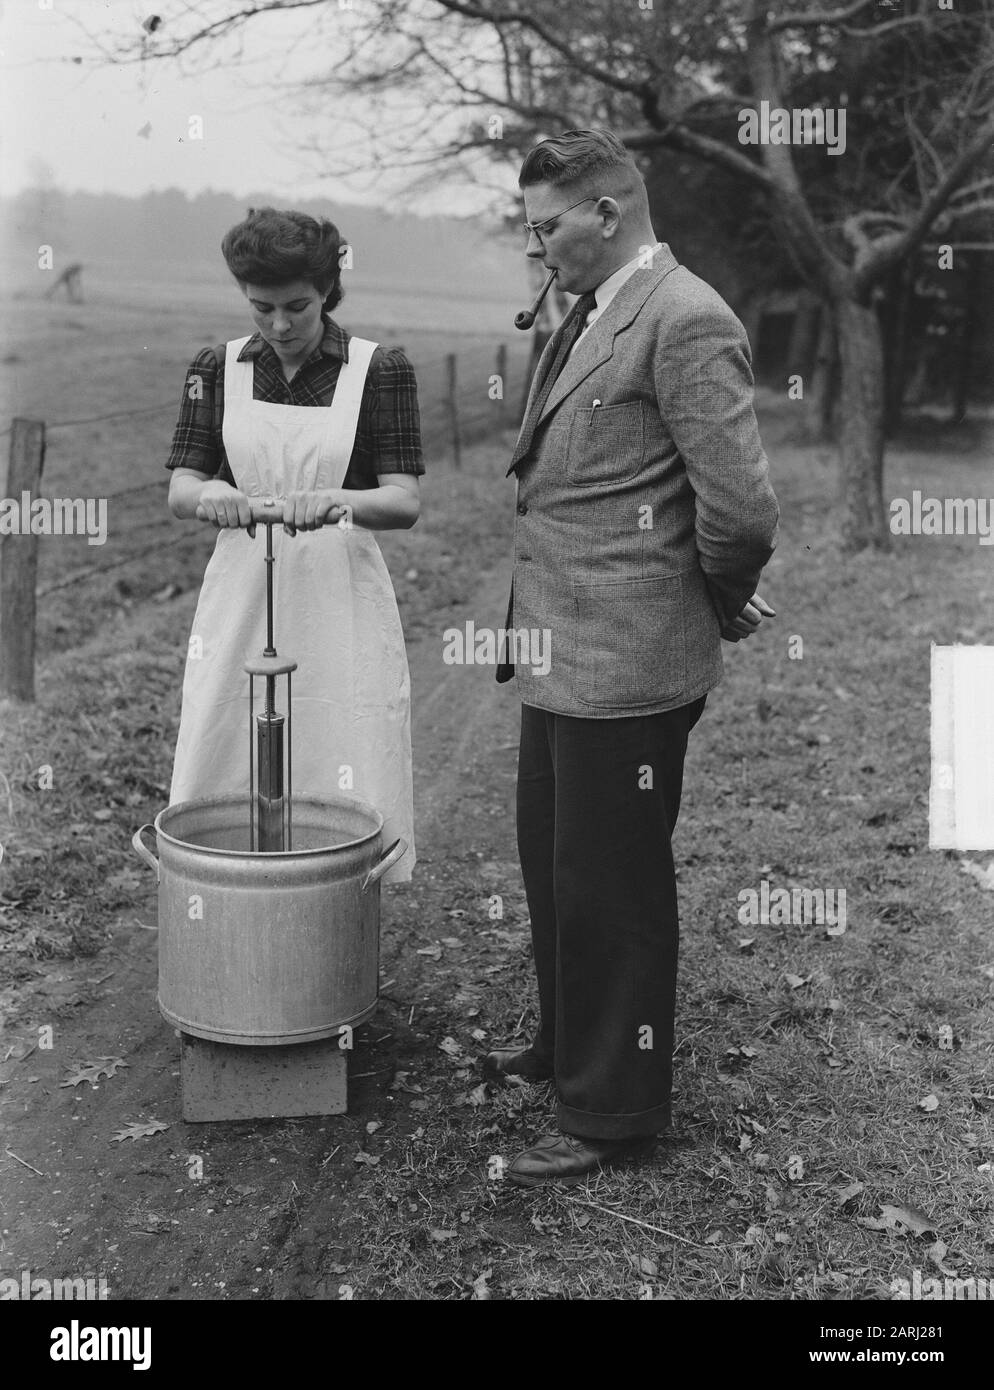 E. Koose du hameau de Joppe (près de Gorssel) a inventé un appareil avec lequel un linge normal peut être fait en 5 minutes. L'utilisation de cette solution coûte moins de savon et moins d'effort. Cette machine, qui ressemble à une pompe à vélo, n'est plus battue par l'eau savonneuse, mais le savon est battu par la cire. La femme de l'inventeur démontre la première pompe lave-linge Date: 30 janvier 1951 lieu: Gueldre, Joppe mots clés: Ménage, inventeurs, inventions, lavage Nom personnel: Cours, E. Banque D'Images